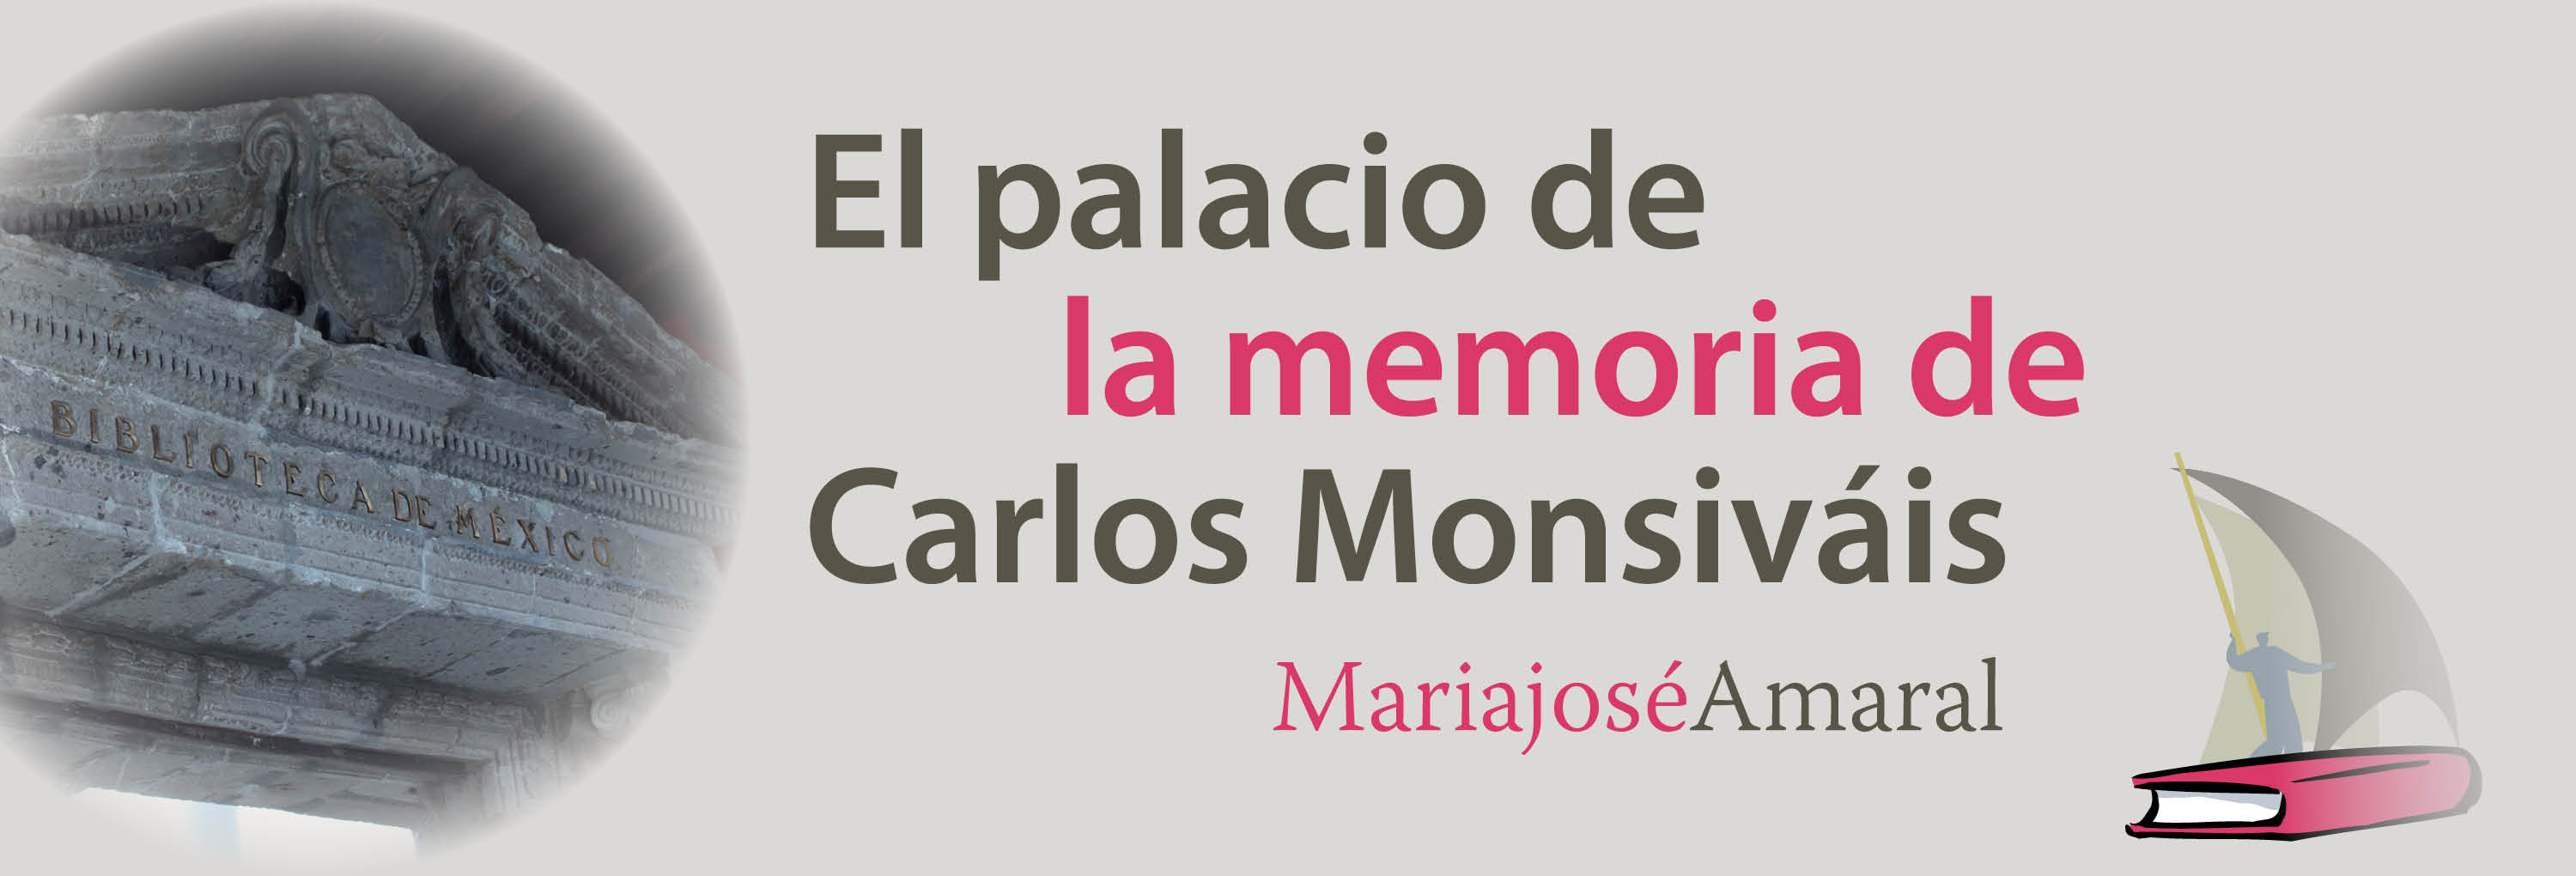 Banner del texto Maríajosé Amaral, “El palacio de la memoria de Carlos Monsivais”>
			</div>
		</header>
			<main class=